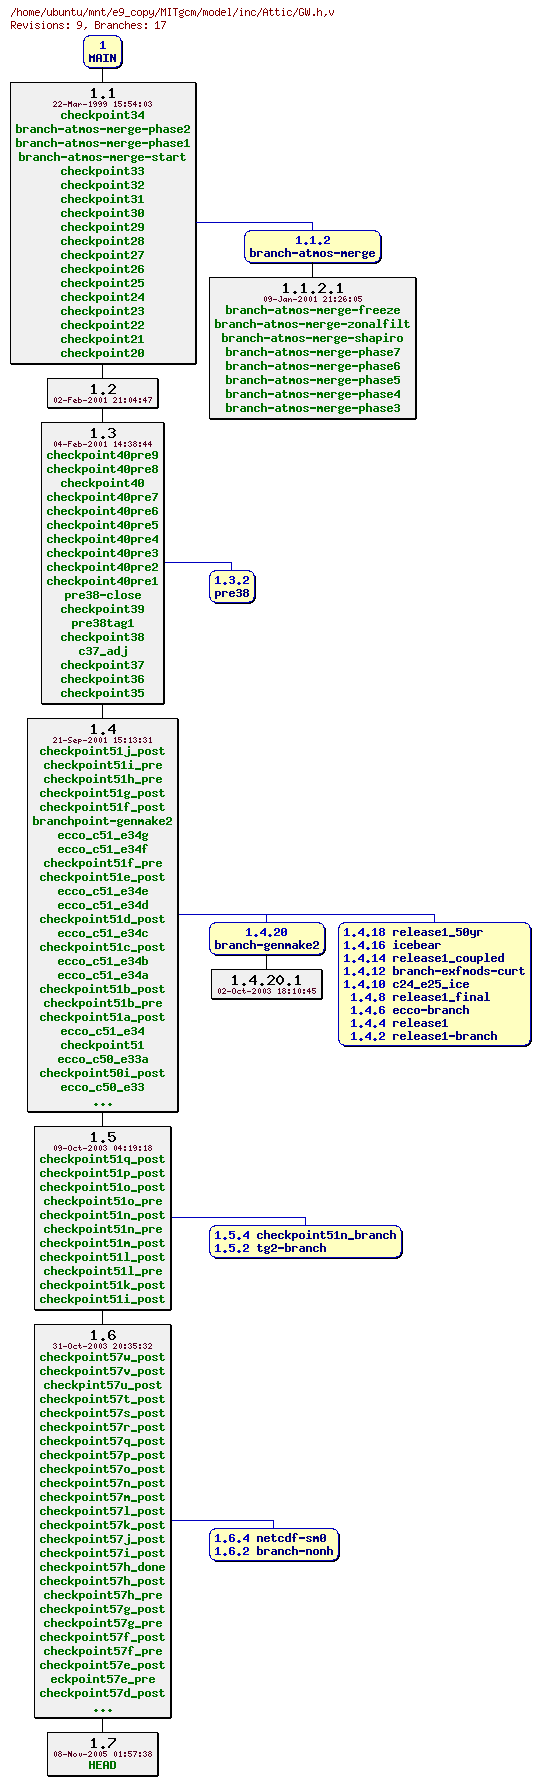 Revisions of MITgcm/model/inc/GW.h